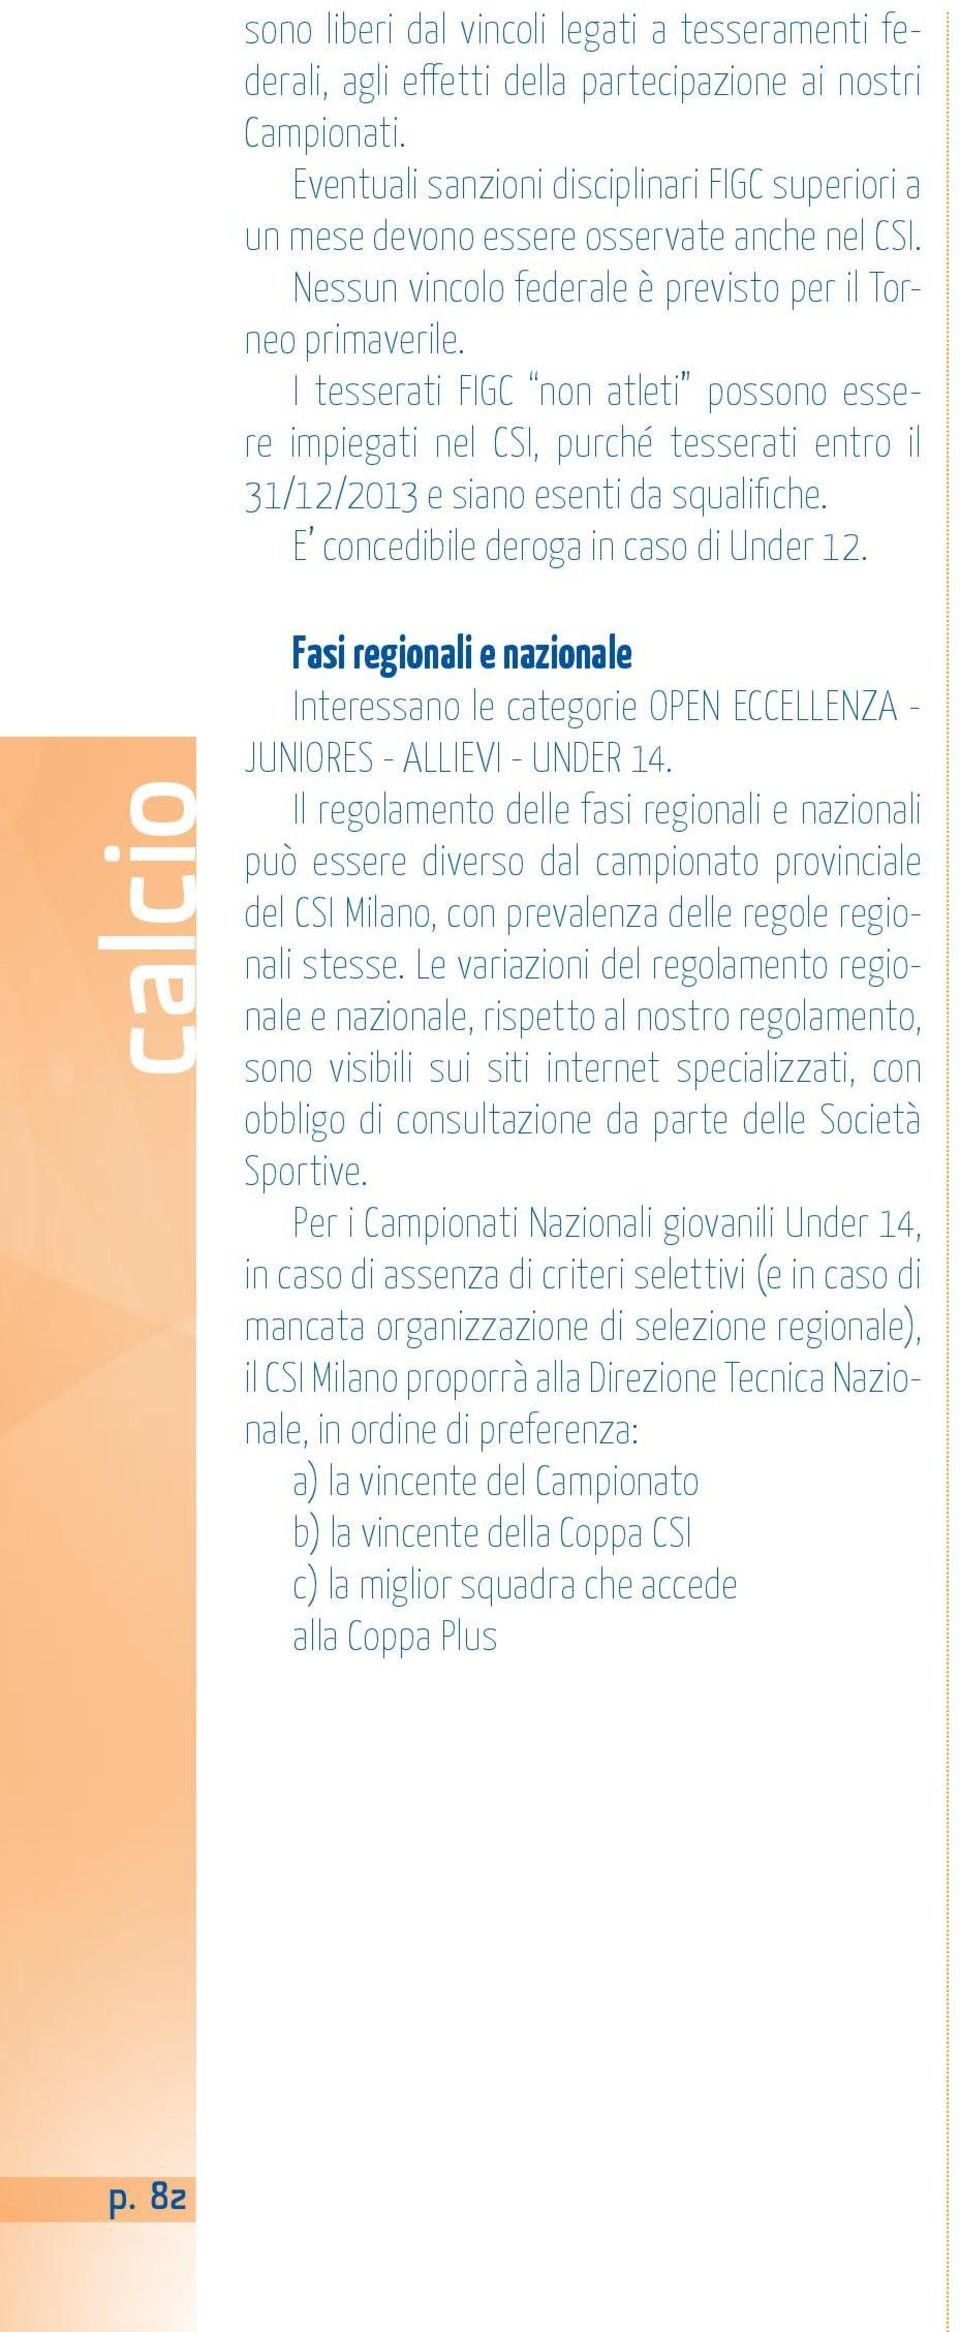 I tesserati FIGC non atleti possono essere impiegati nel CSI, purché tesserati entro il 31/12/2013 e siano esenti da squalifiche. E concedibile deroga in caso di Under 12.